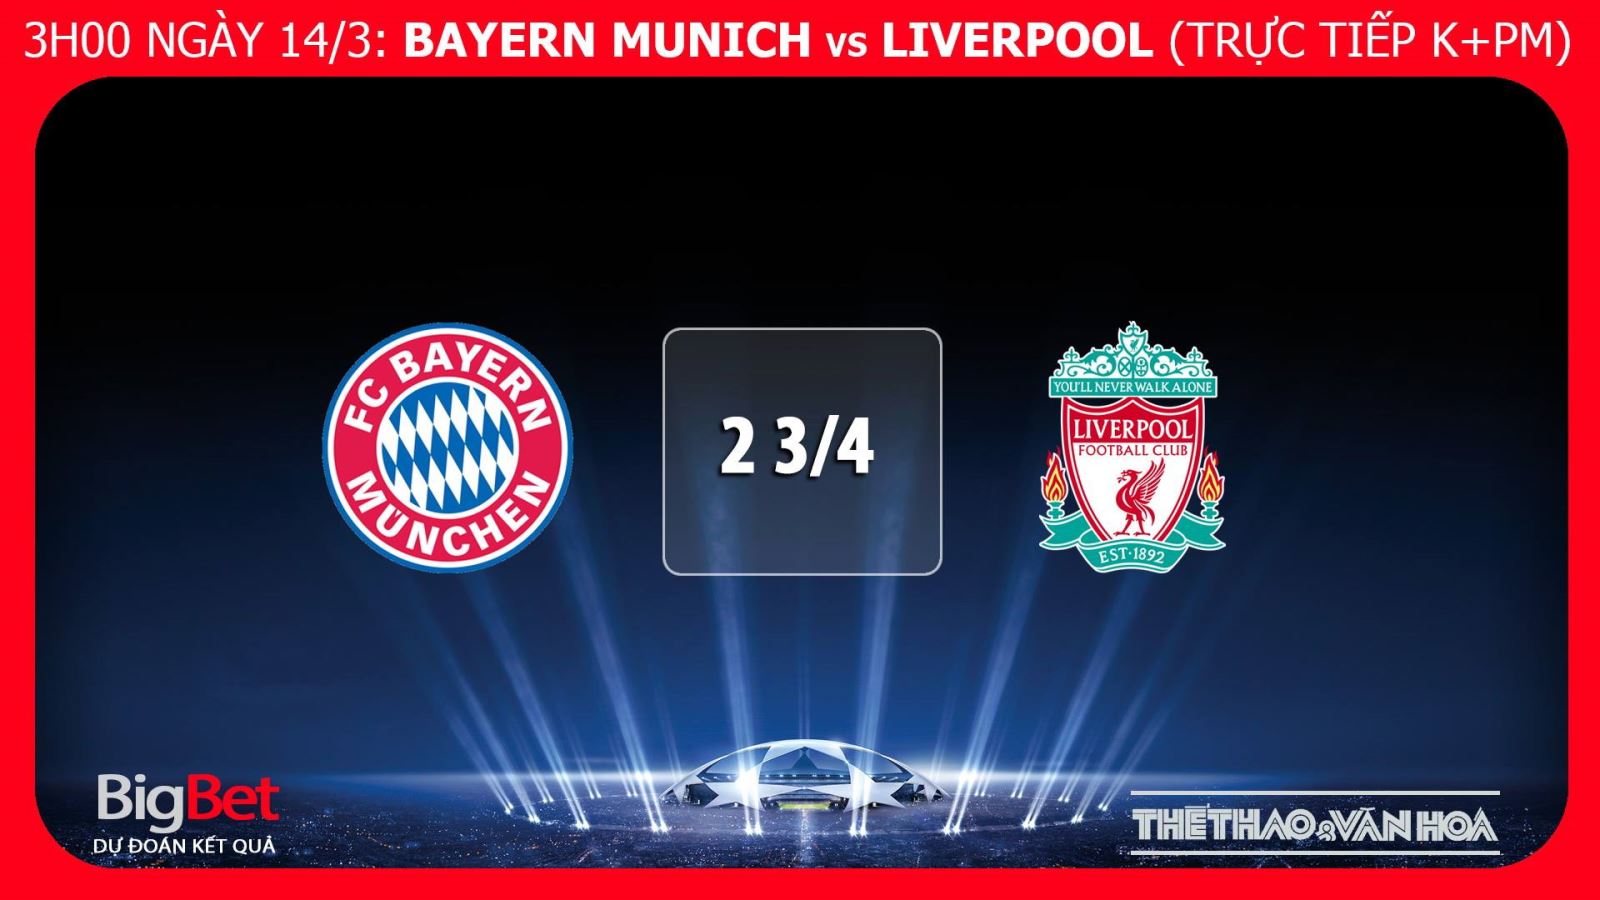 Bayern, Bayern Munich vs Liverpool, trực tiếp bóng đá, Bayern Munich vs Liverpool, truc tiep bong da, nhận định bóng đá Bayern Munich vs Liverpool, kèo Bayern Munich vs Liverpool, kèo bóng đá, nhận định Bayern Munich vs Liverpool, dự đoán bóng đá